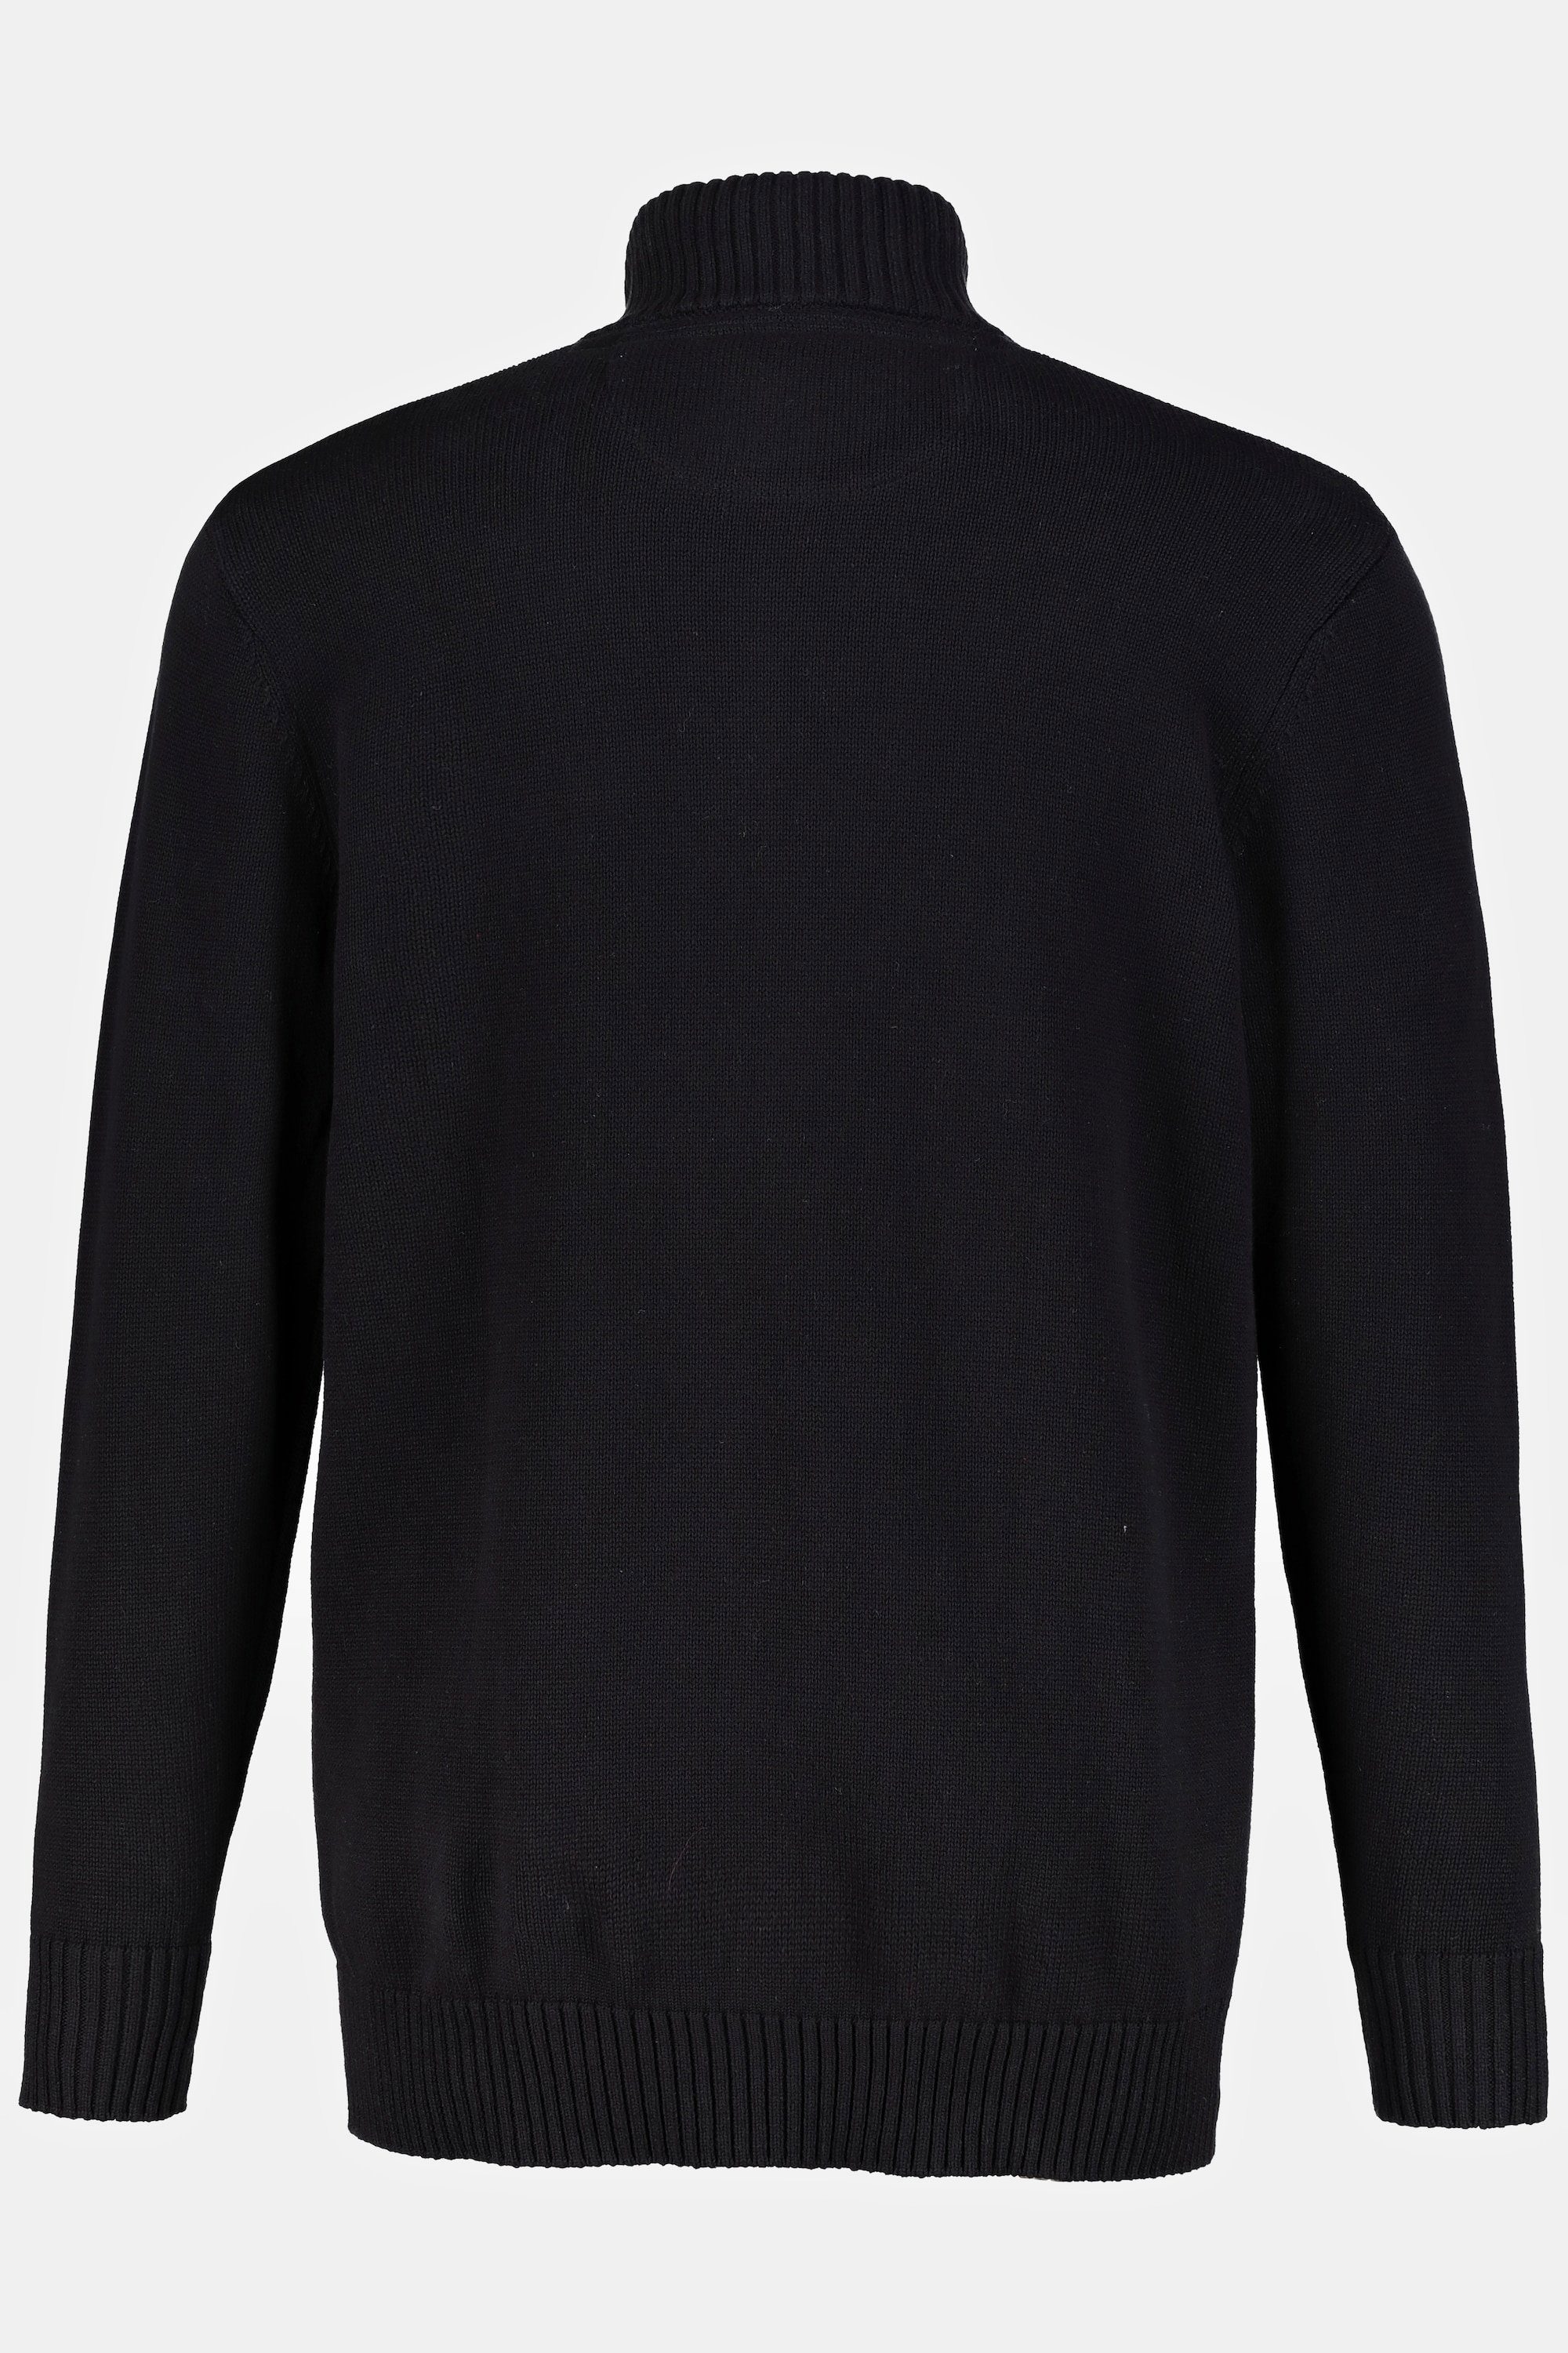 Rippbündchen schwarz Stehkragen Poloshirt JP1880 Strickjacke